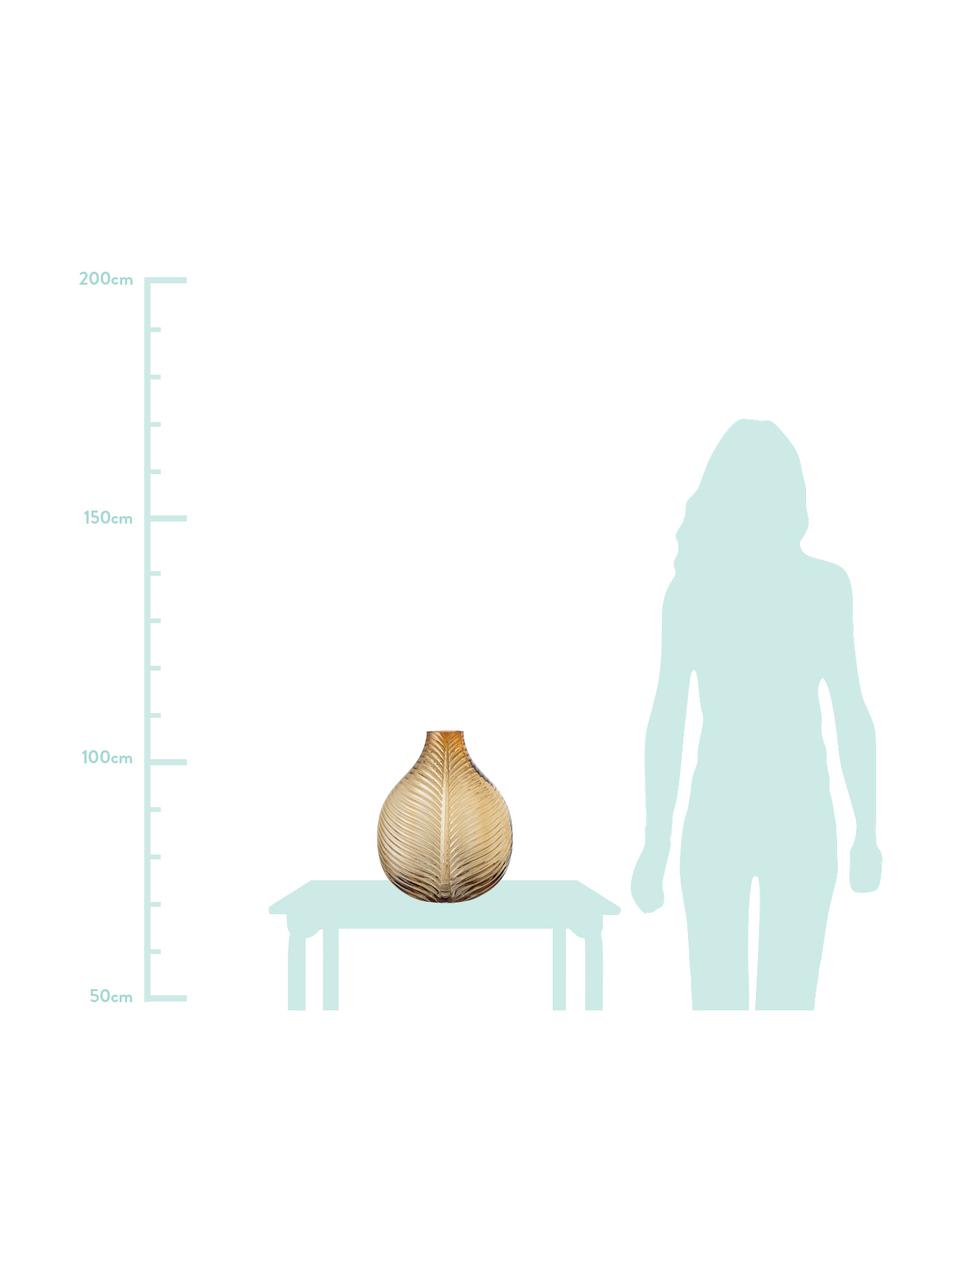 Große Deko-Vase Amber mit Blattstruktur, Glas, Braun, 28 x 36 cm